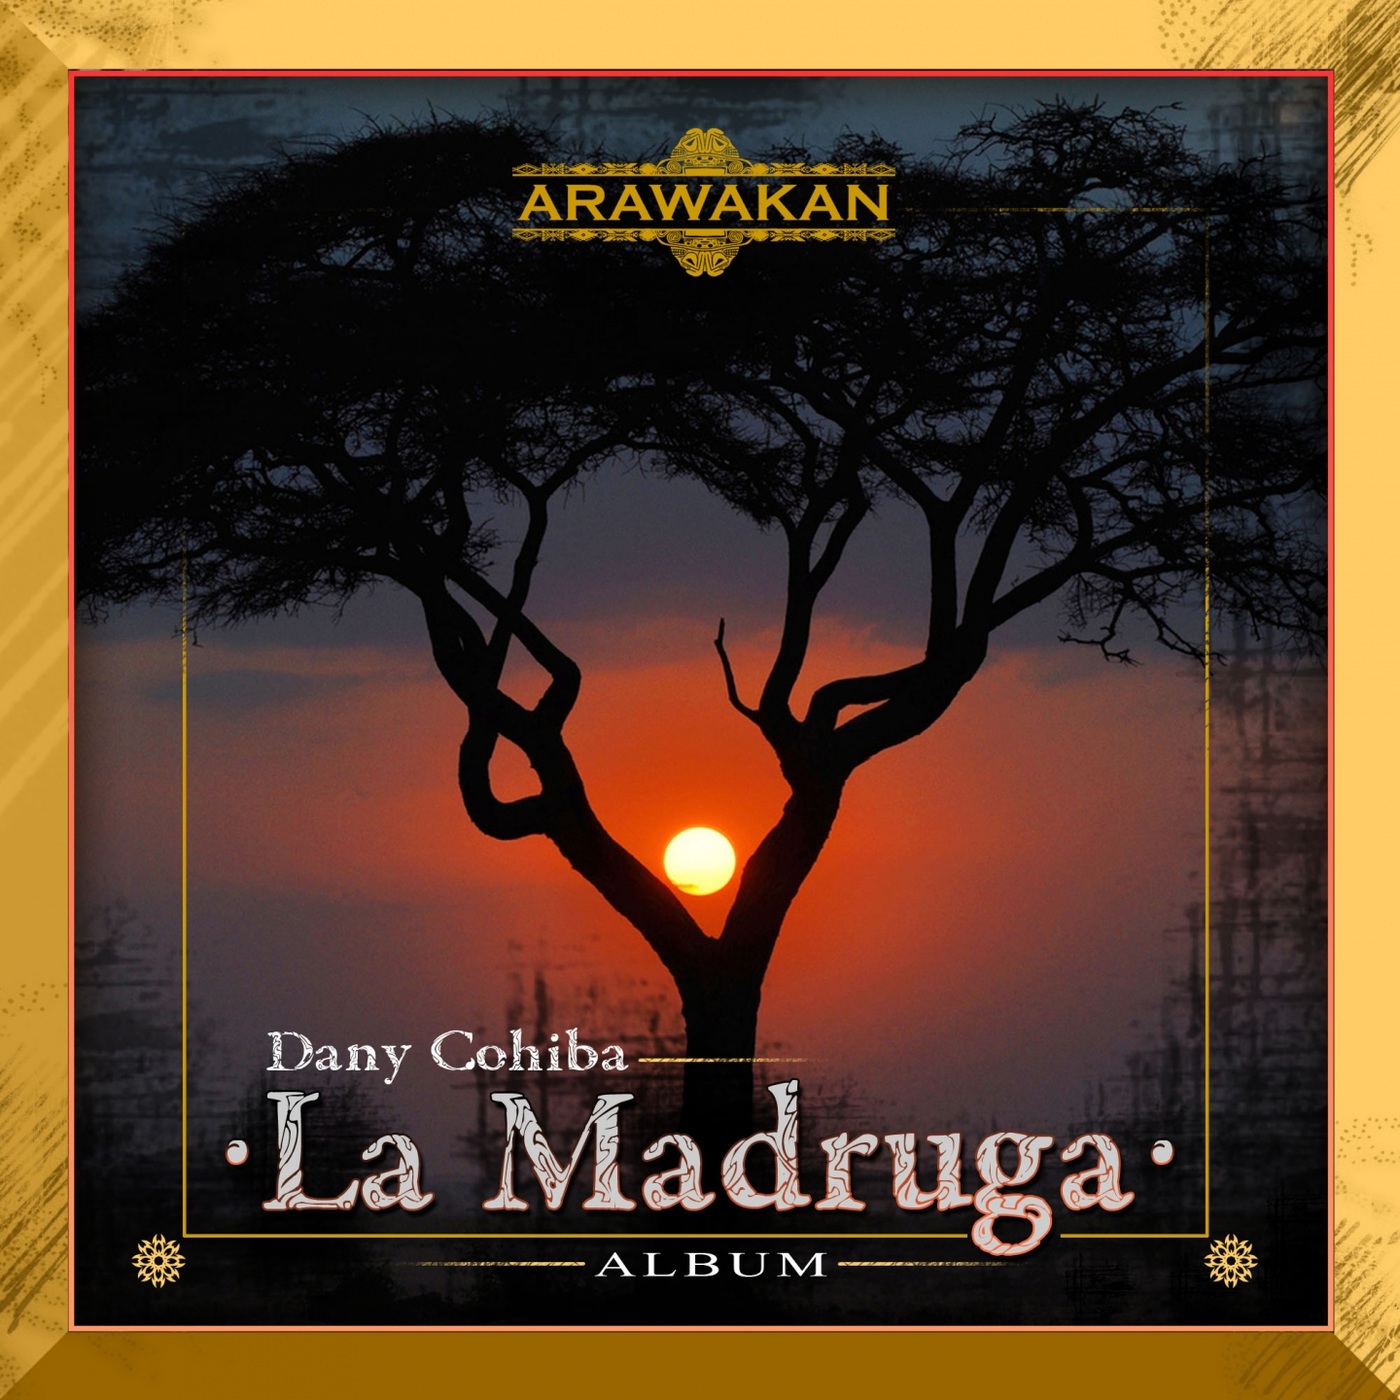 Dany Cohiba - La Madruga / Arawakan Records